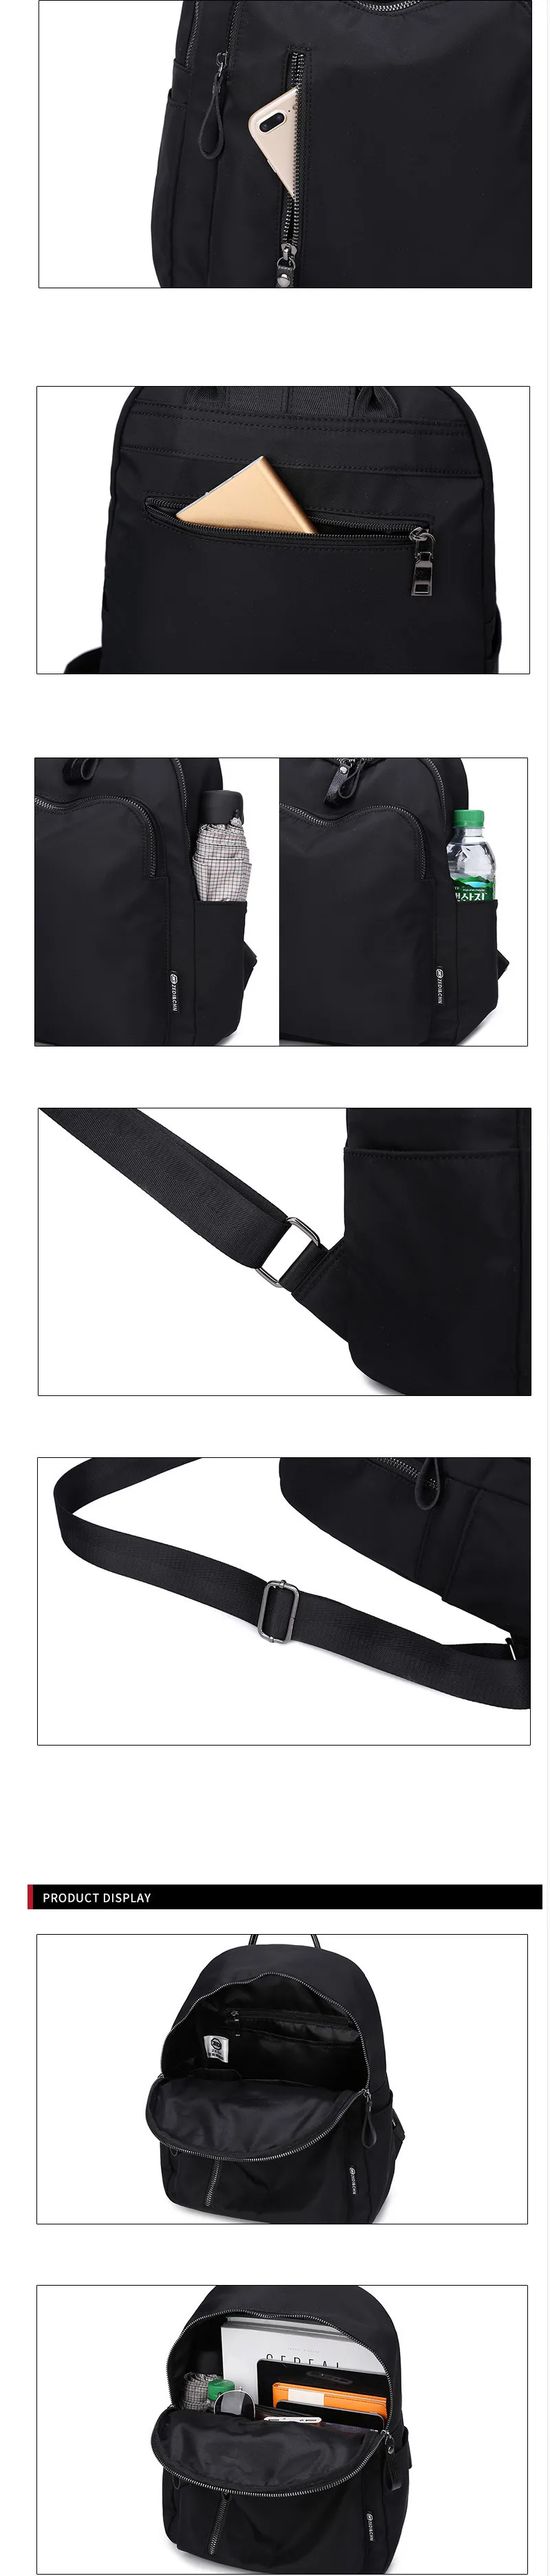 Рюкзак из ткани Оксфорд Новая Женская Корейская Холщовая Сумка модный рюкзак